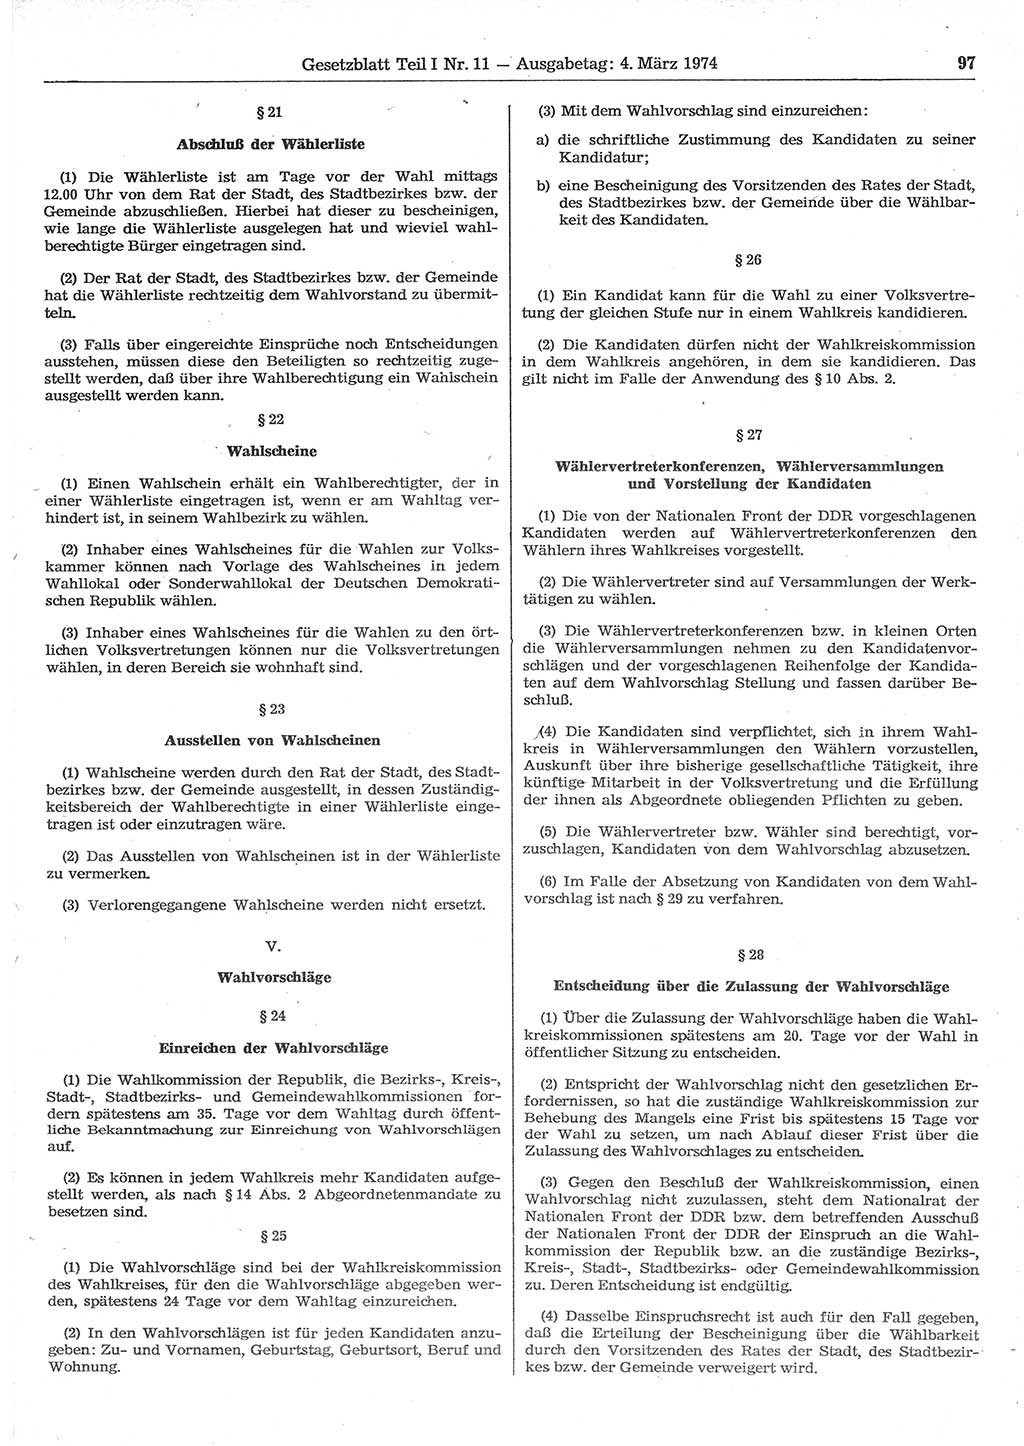 Gesetzblatt (GBl.) der Deutschen Demokratischen Republik (DDR) Teil Ⅰ 1974, Seite 97 (GBl. DDR Ⅰ 1974, S. 97)